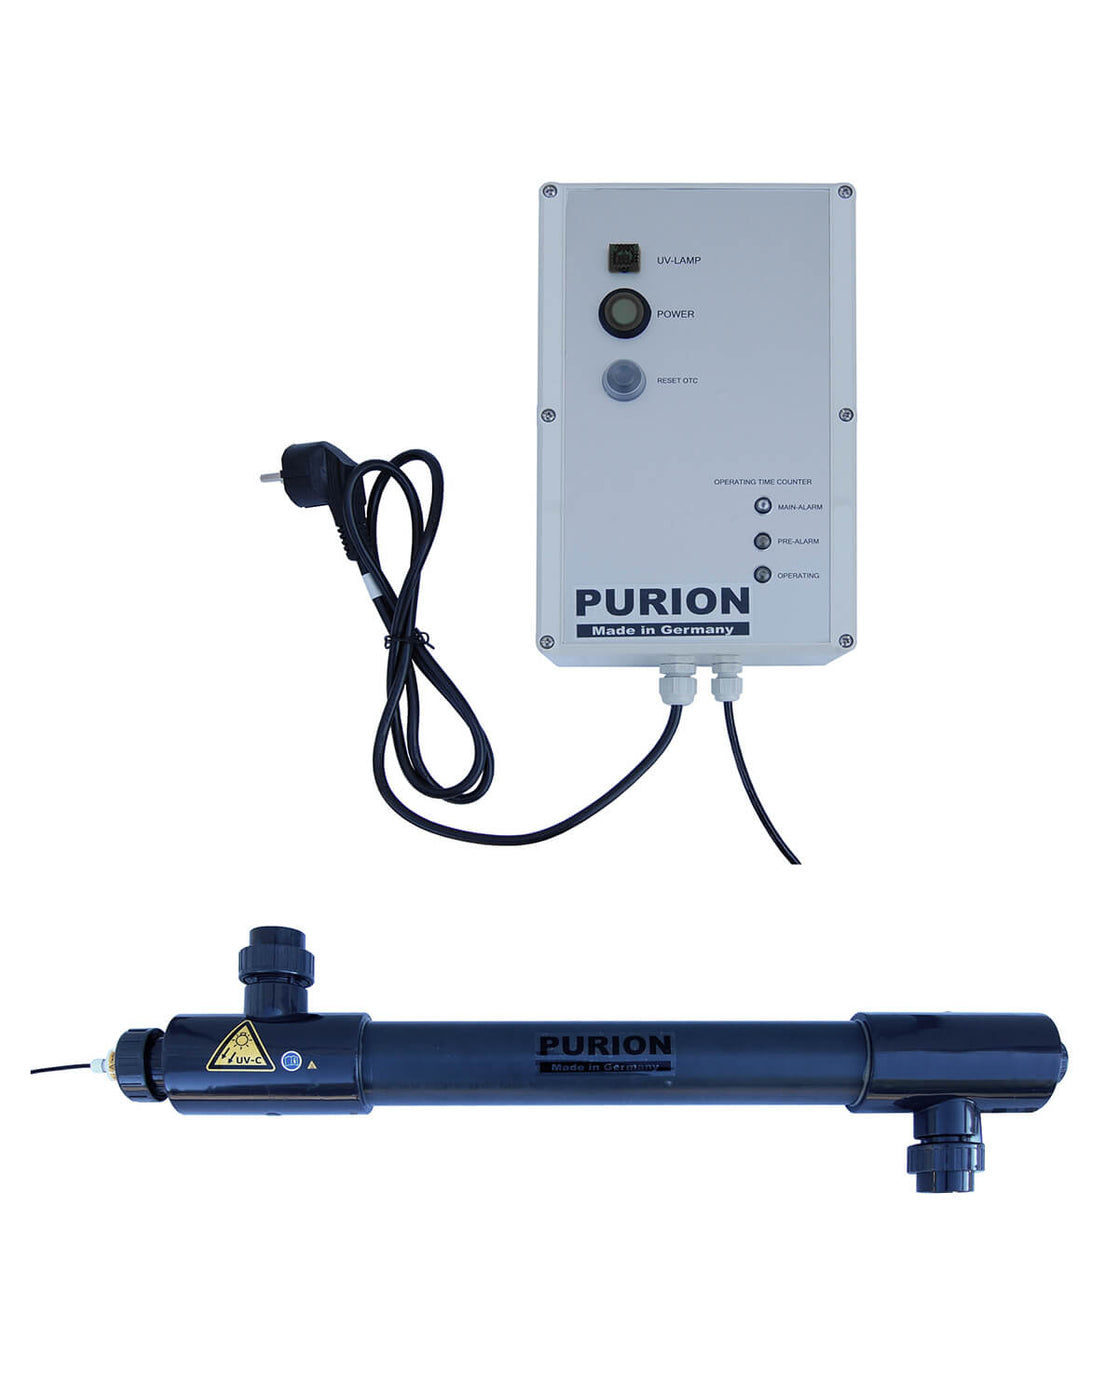 Die PURION GmbH bietet mit ihrem Produkt PURION 2501 PVC-U OTC Plus professionelle Reinigungsdienstleistungen für Salzwasserpools mit modernster UV-C-Desinfektionsverfahrenstechnologie an.